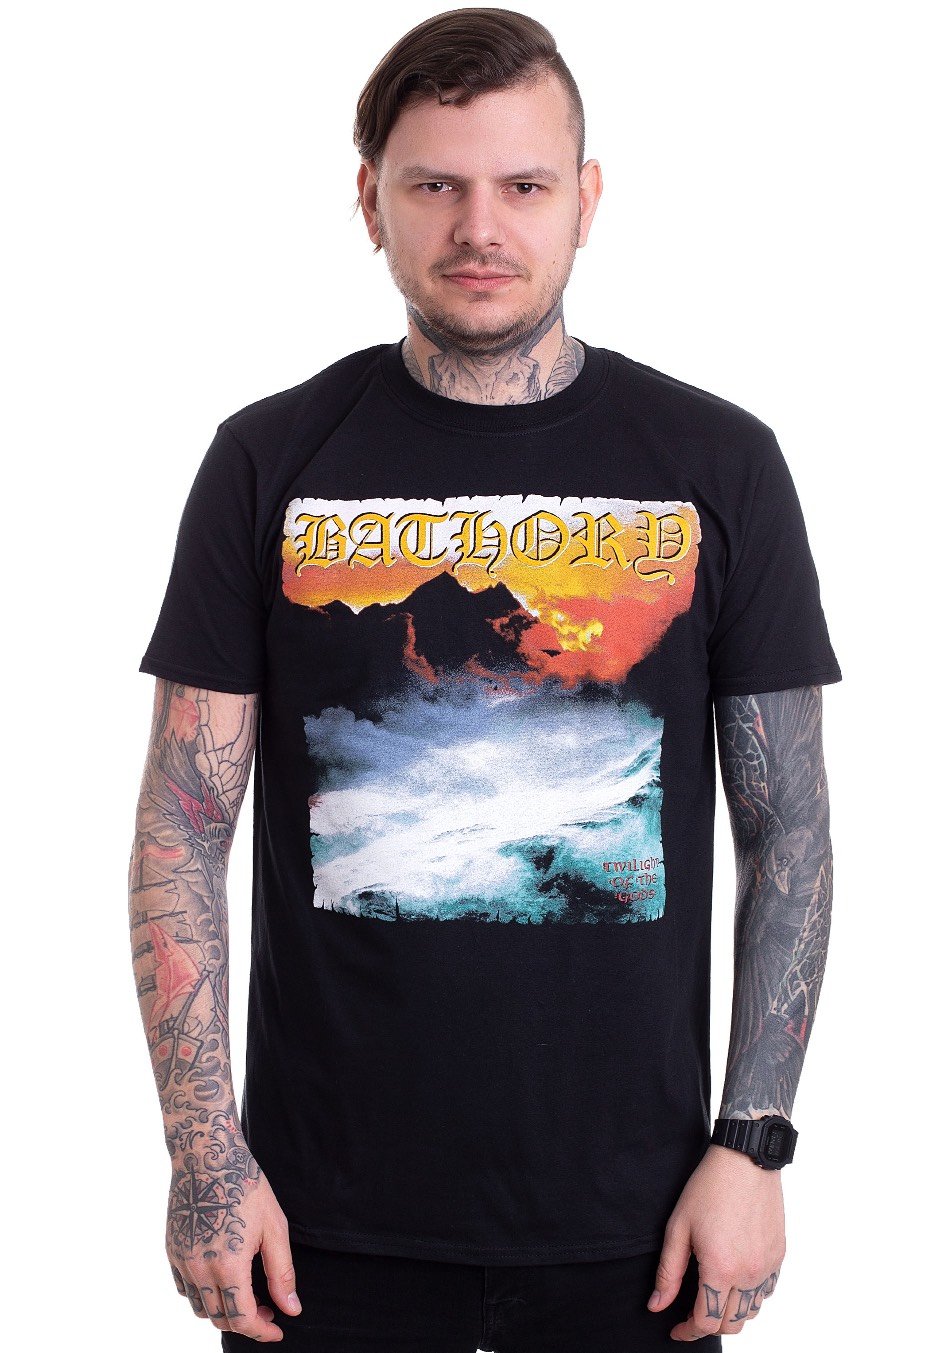 Bathory - Twilight Of The Gods - T-Shirt